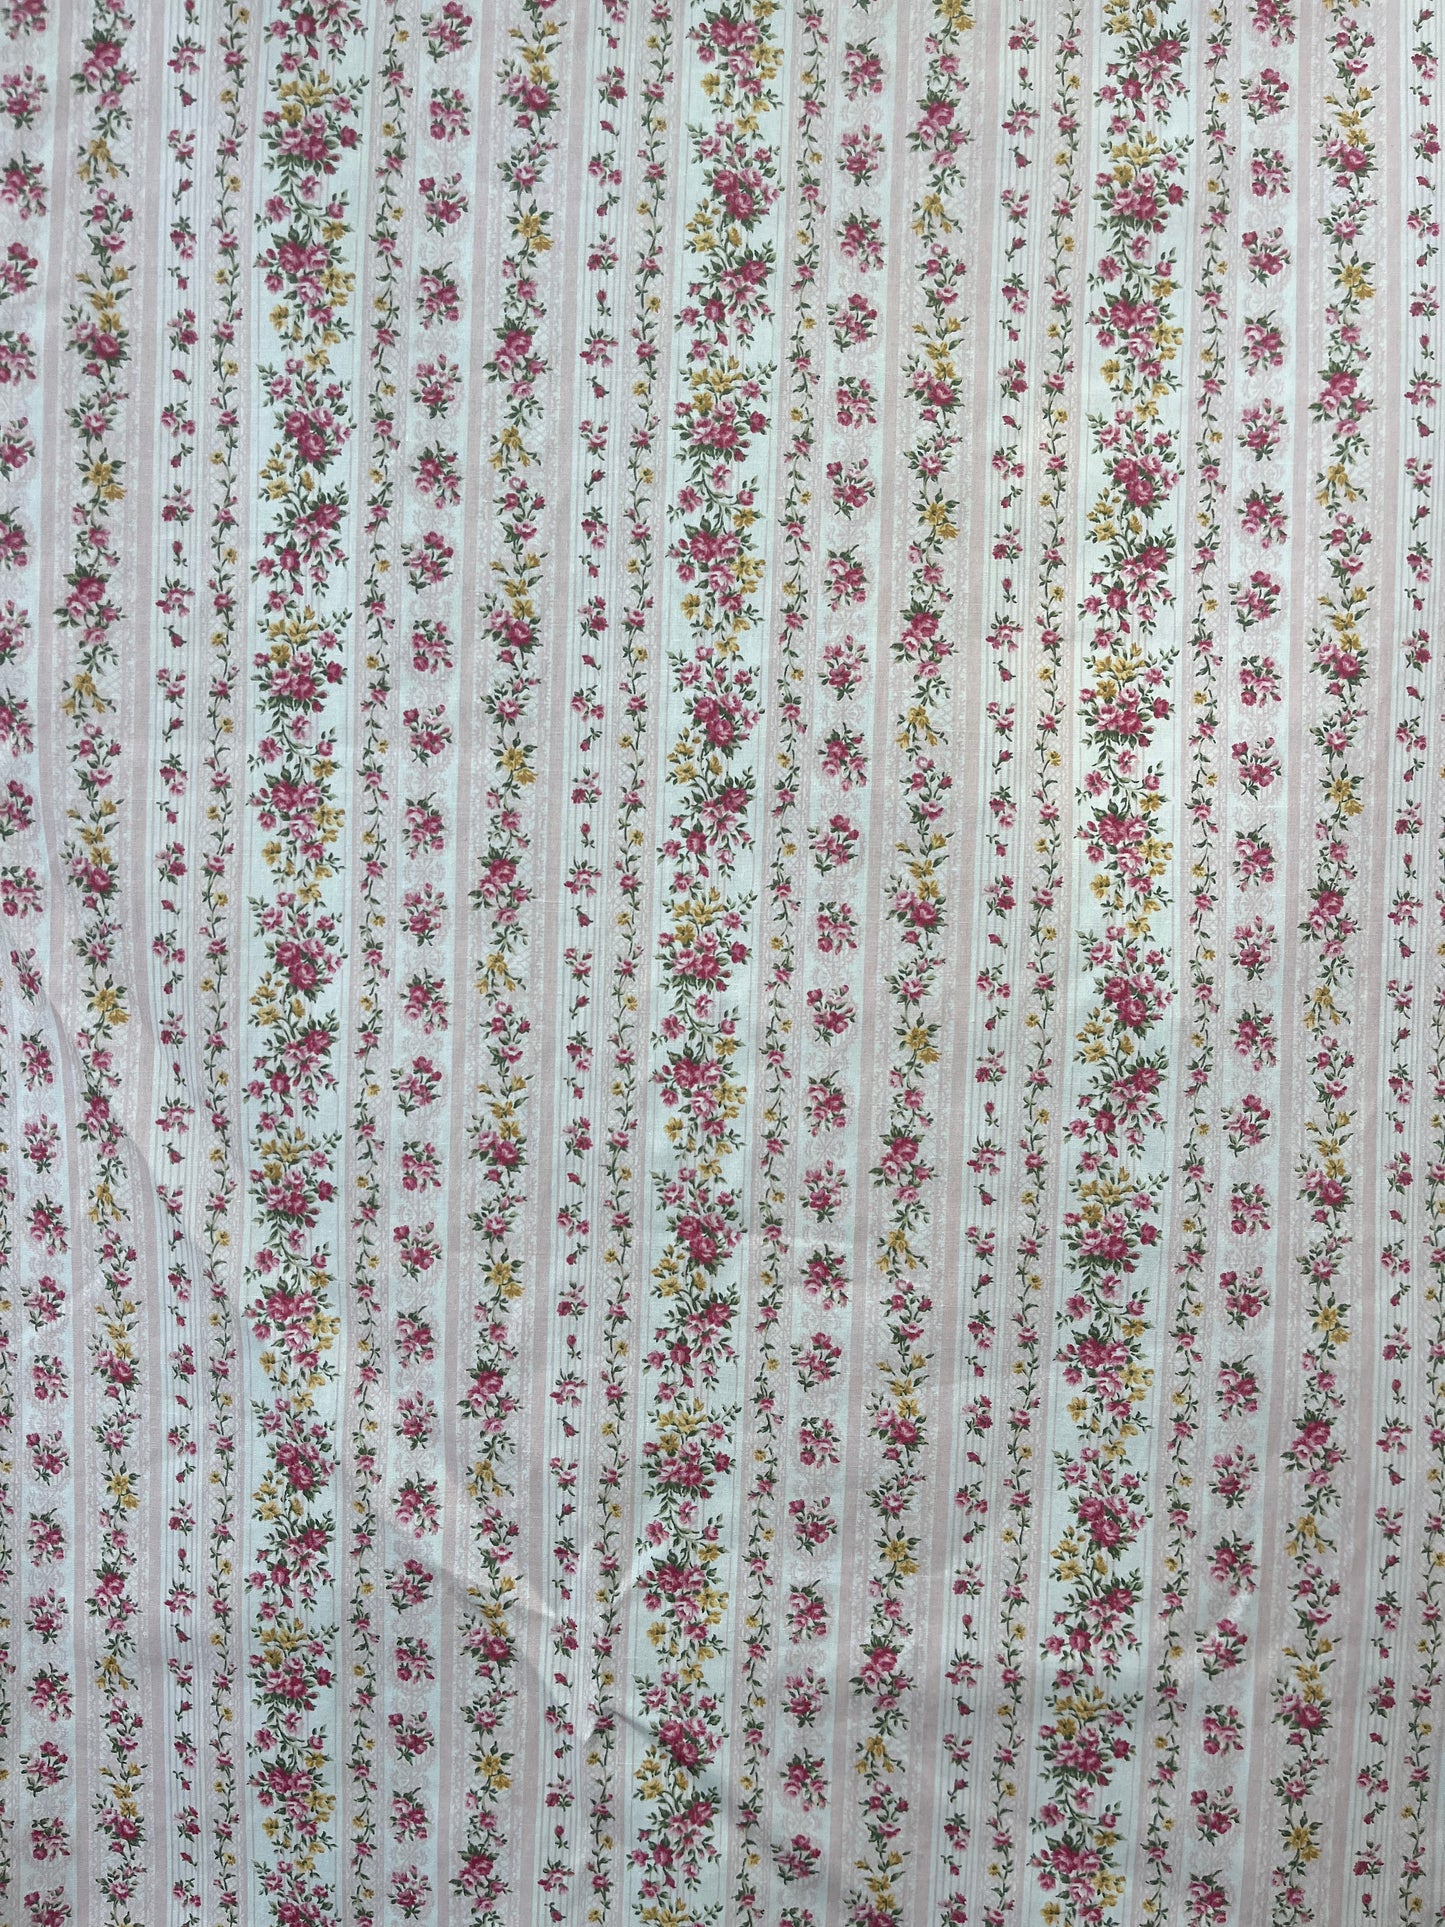 Japanese Floral Lace Cotton Print